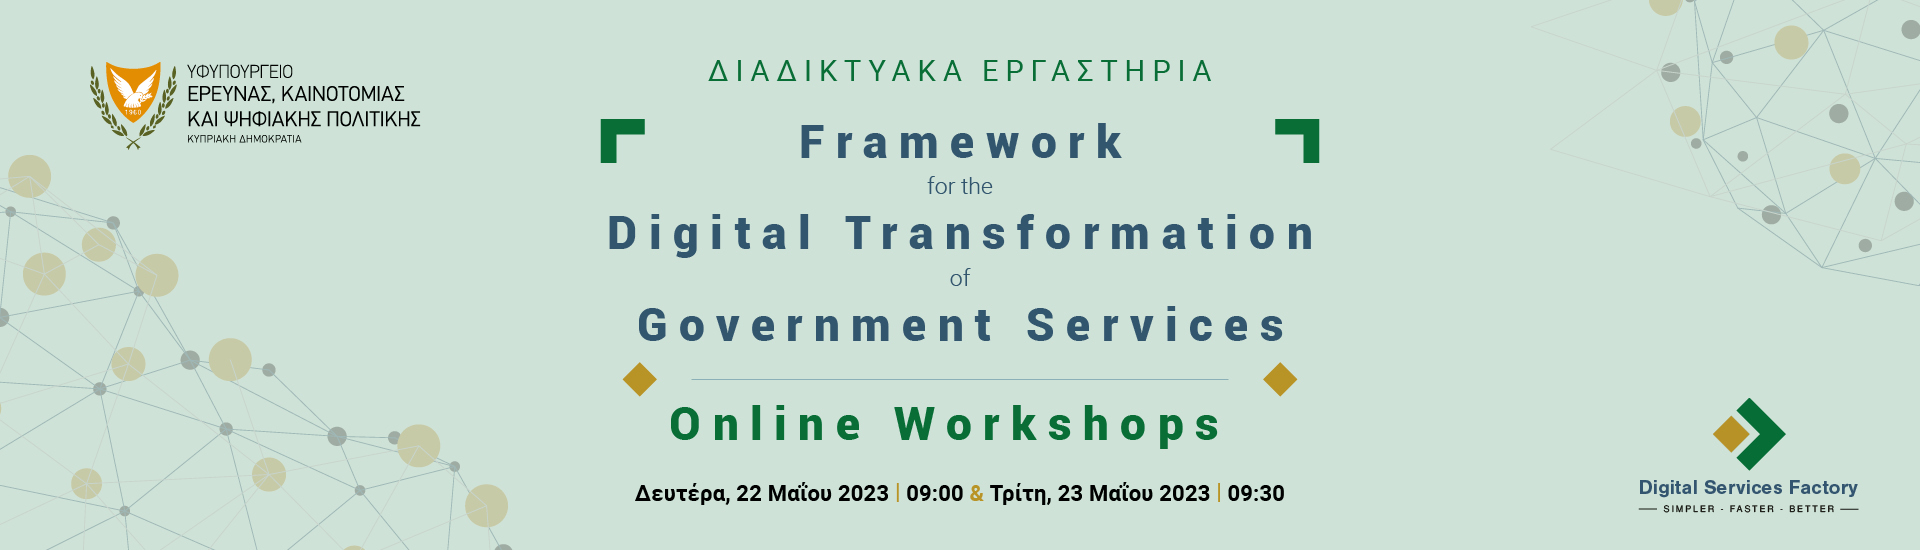 Διαδικτυακά Εργαστήρια Framework for the Digital Transformation of Government Services